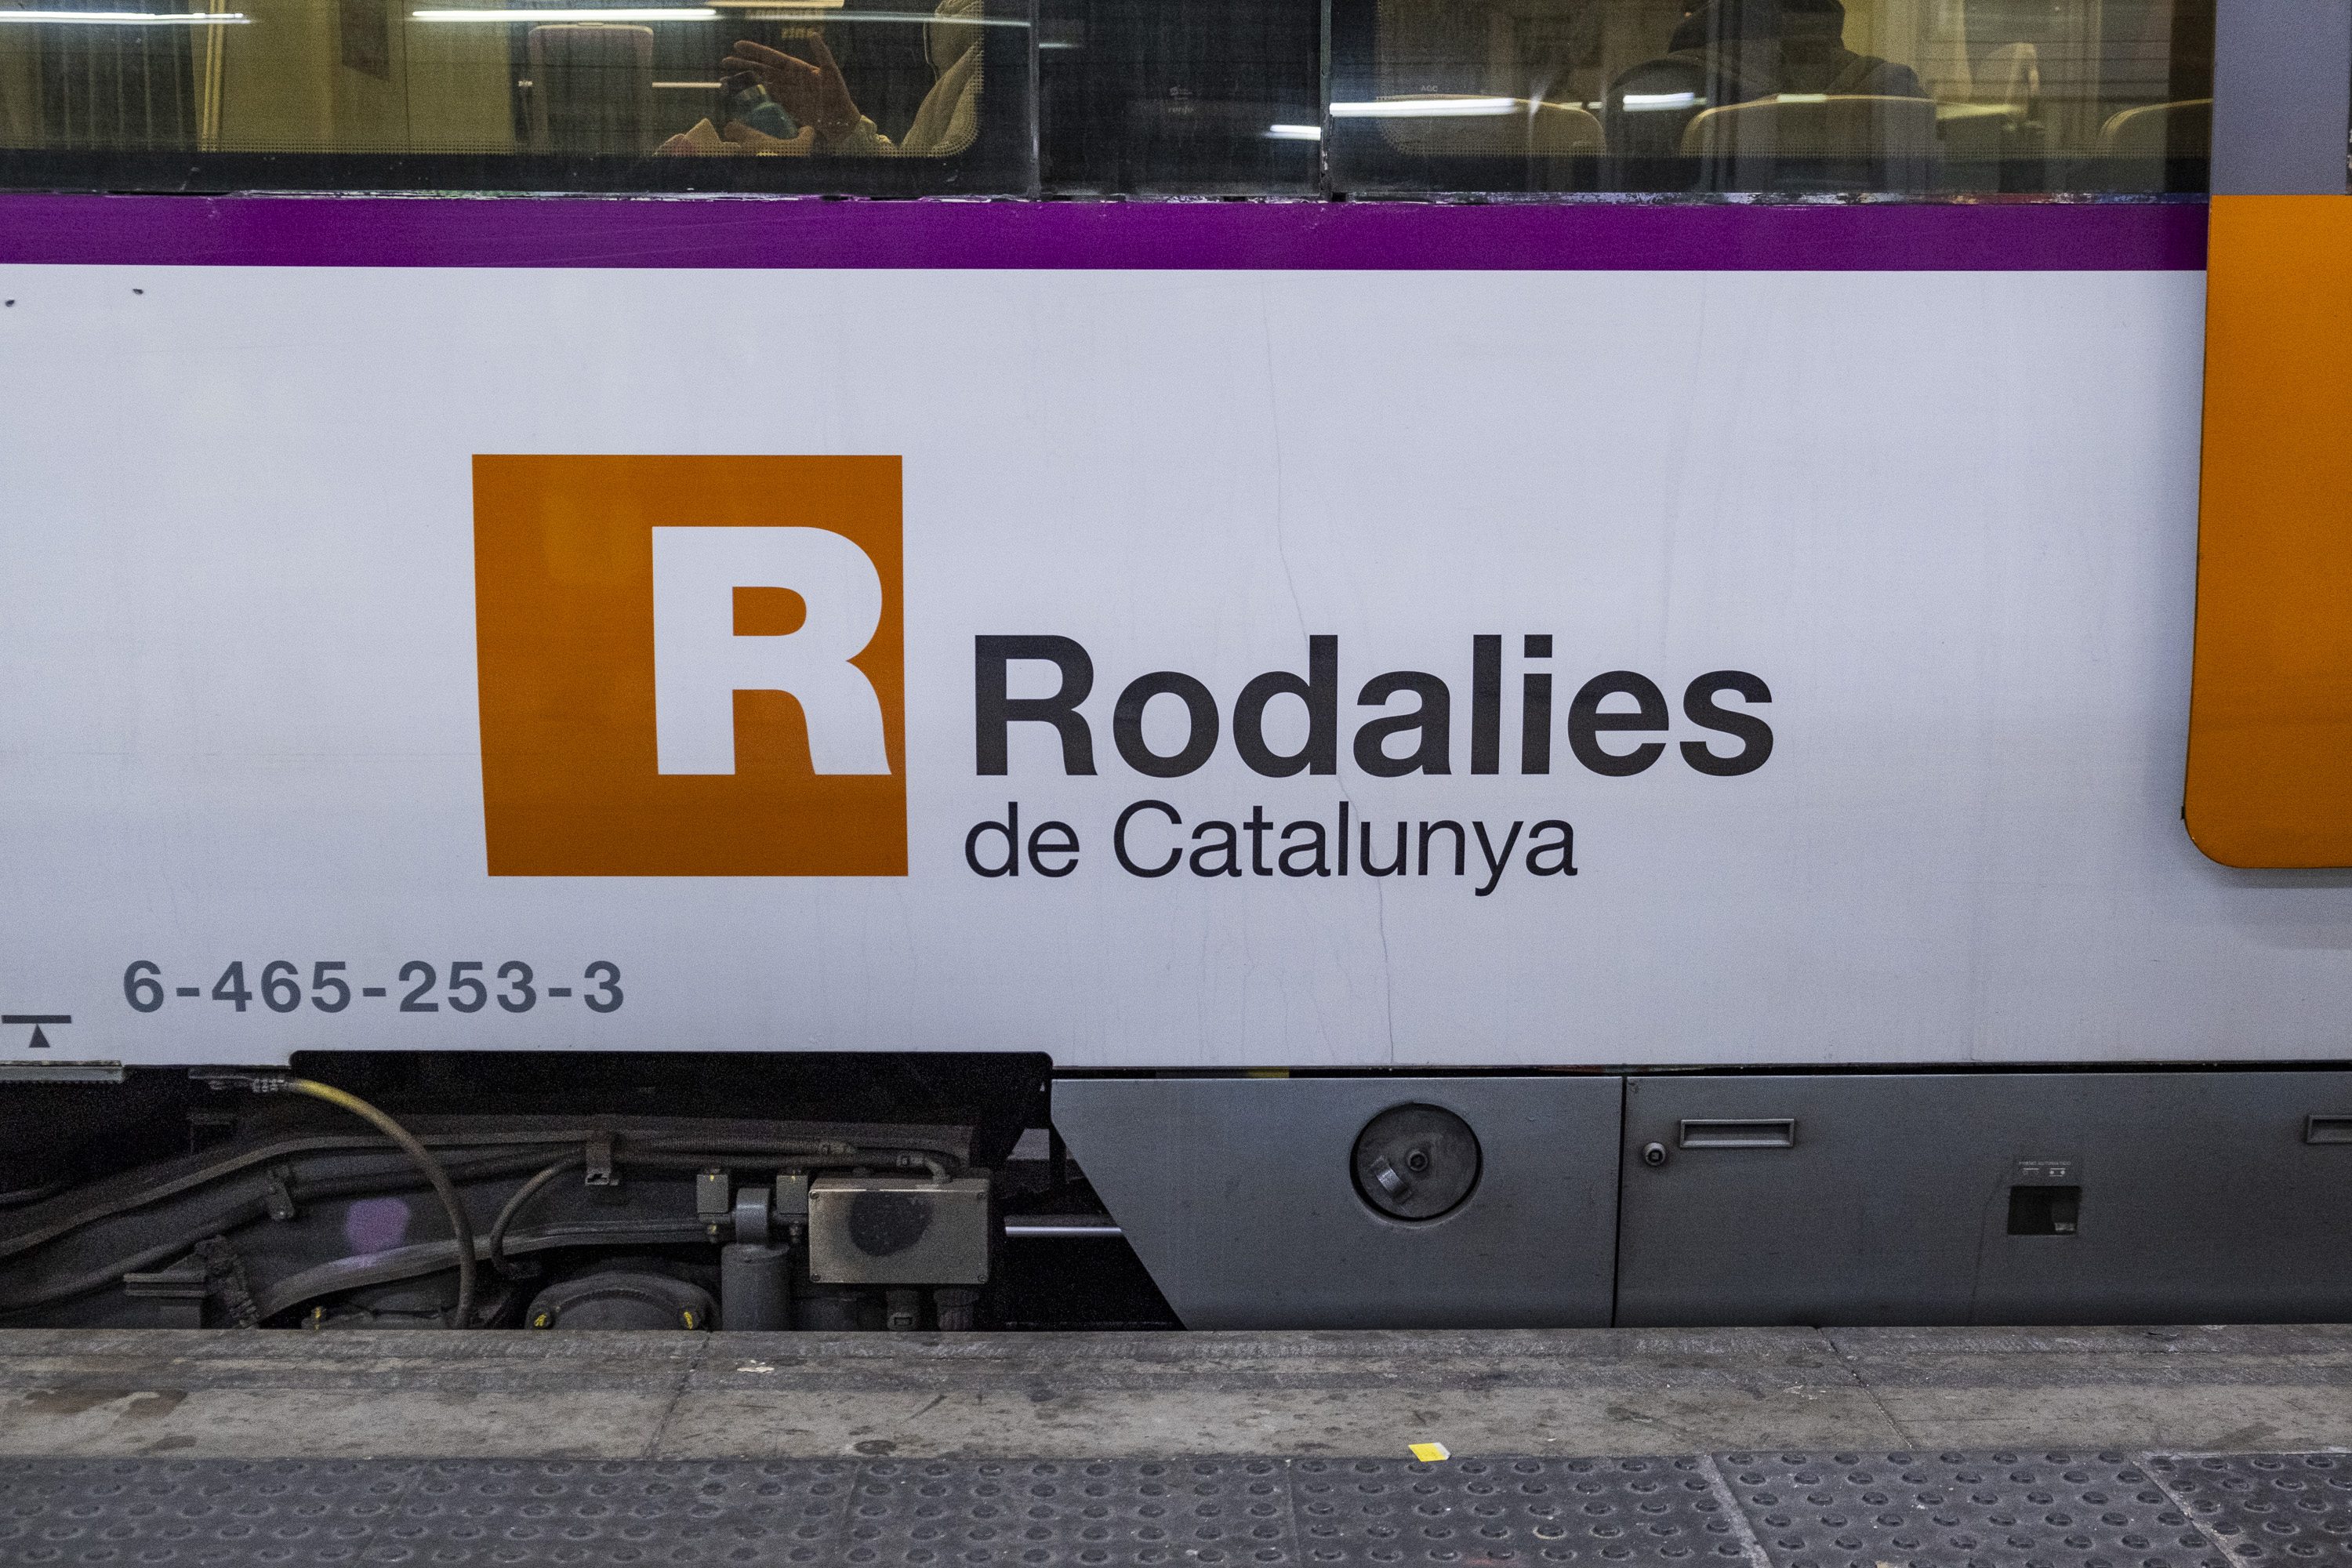 La R4 reduce el servicio entre Sant Vicenç de Calders i Vilafranca por obras hasta agosto